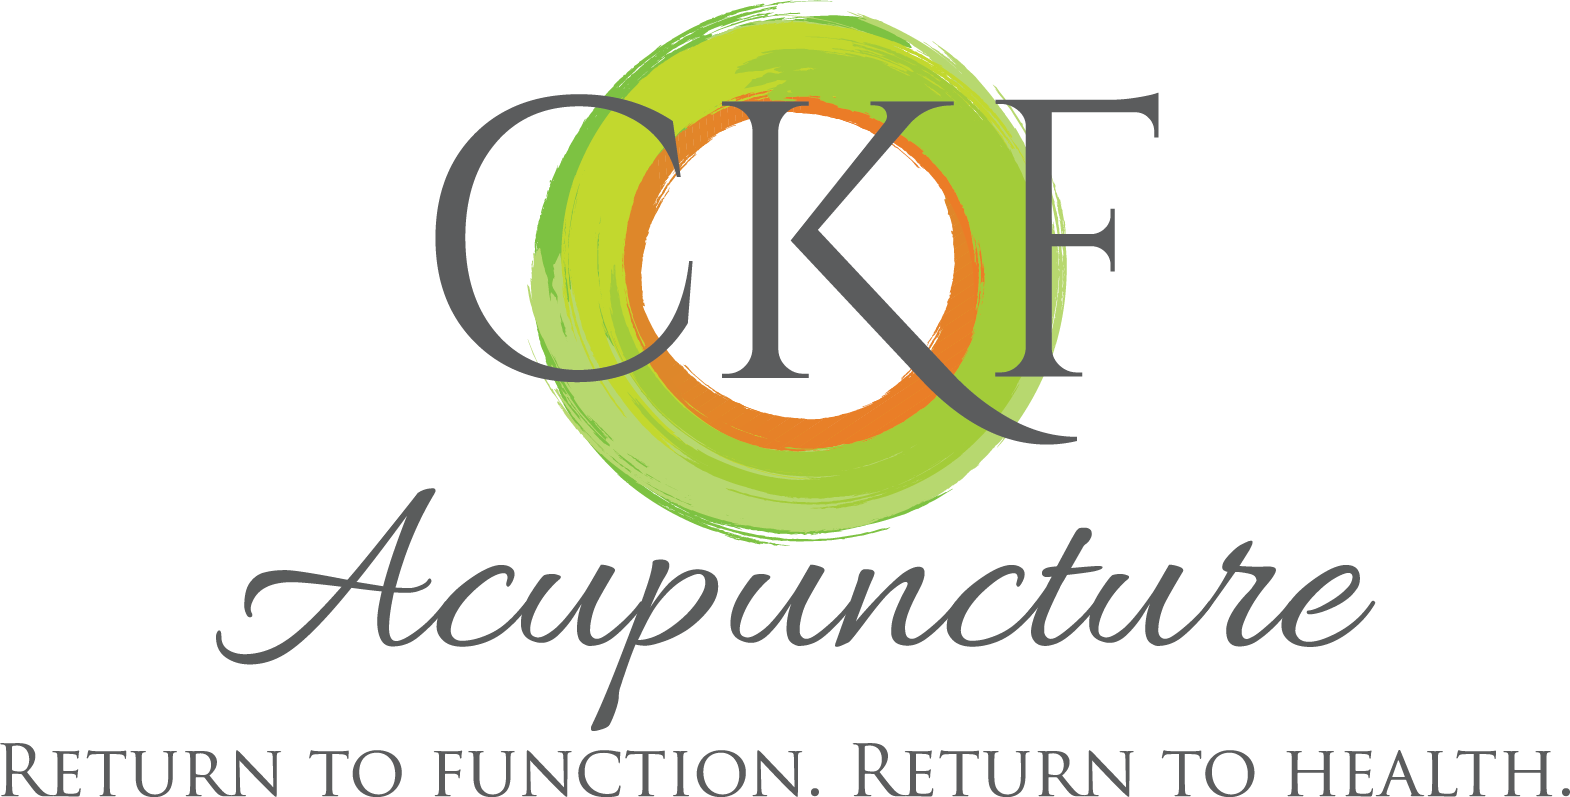 CKF Acupuncture